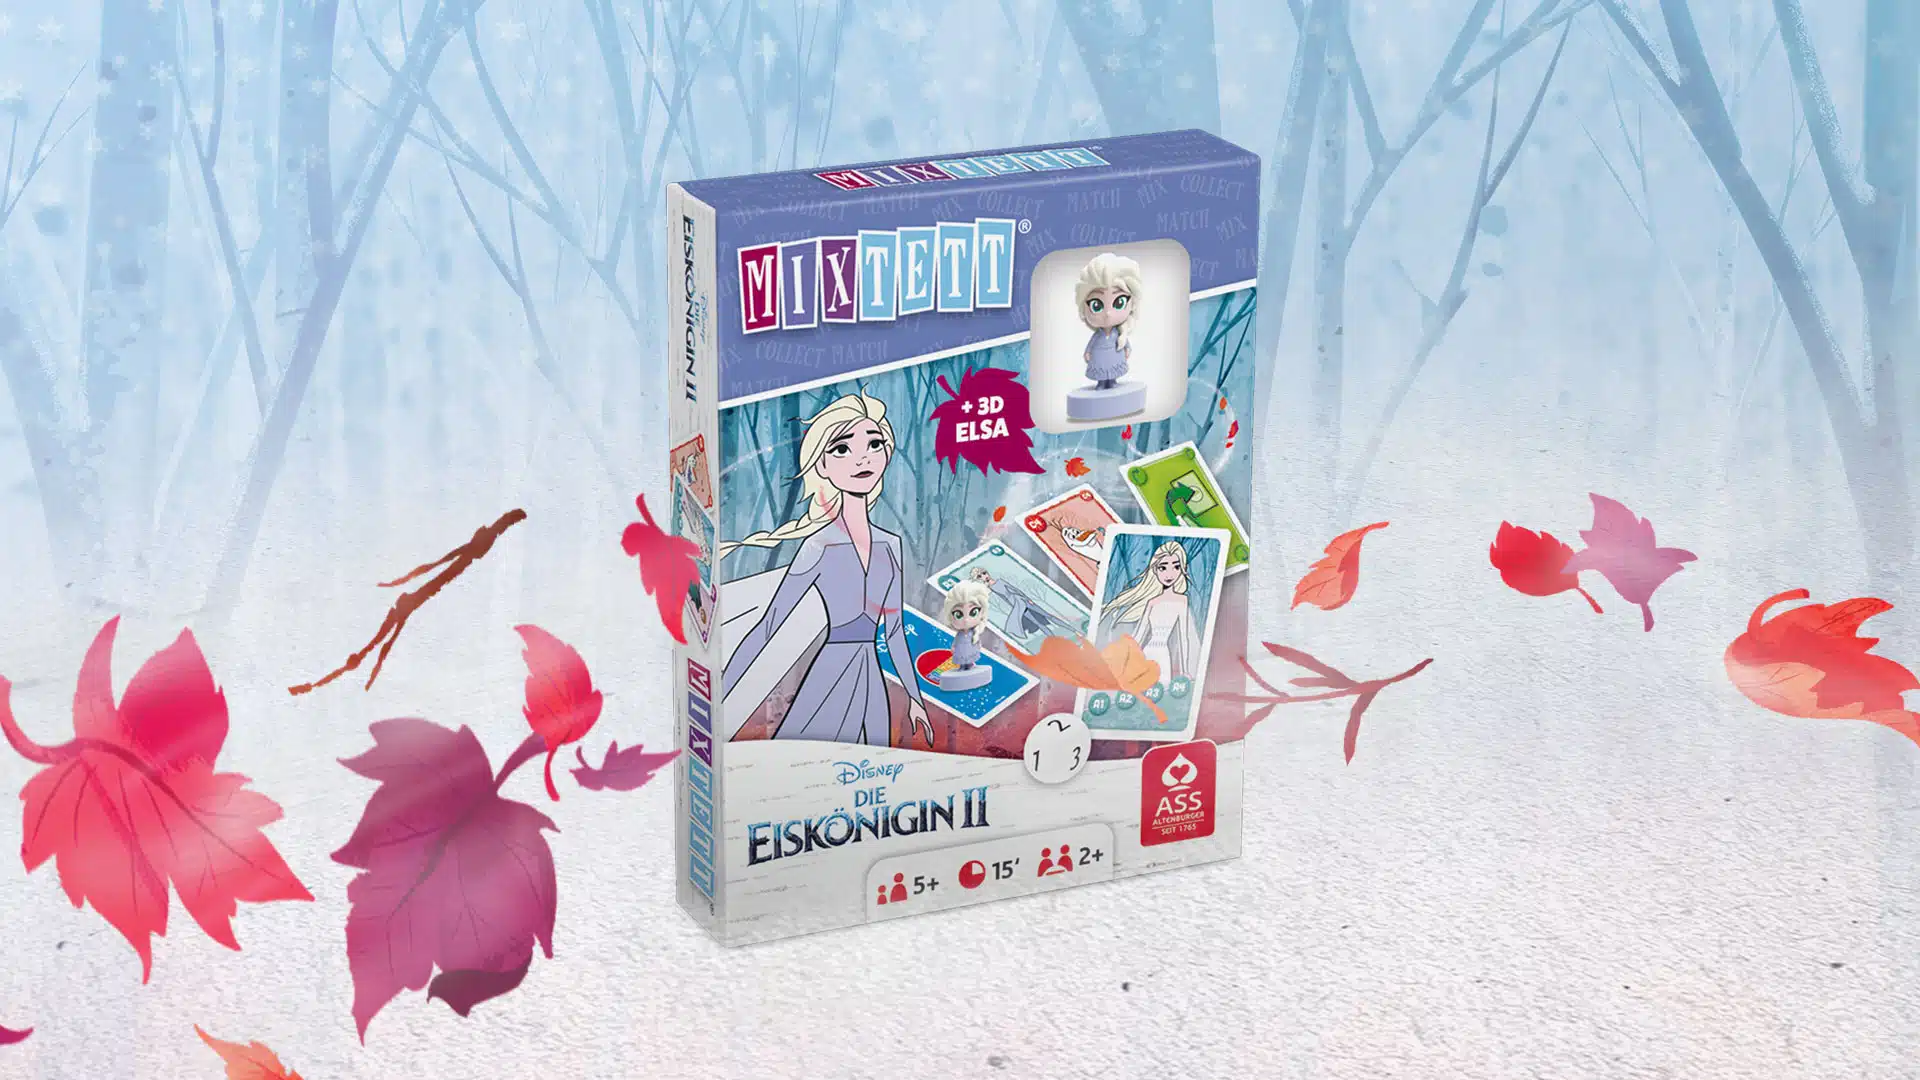 Das Disney Die Eiskoenigin 2 Mixtett Elsa Spiel steht auf einem verschneitem Untergrund. Im Hintergrund ist ein verschneiter Wald zu erkennen, um das Spiel herum fliegen ein paar bunte Laubblätter im Wind.